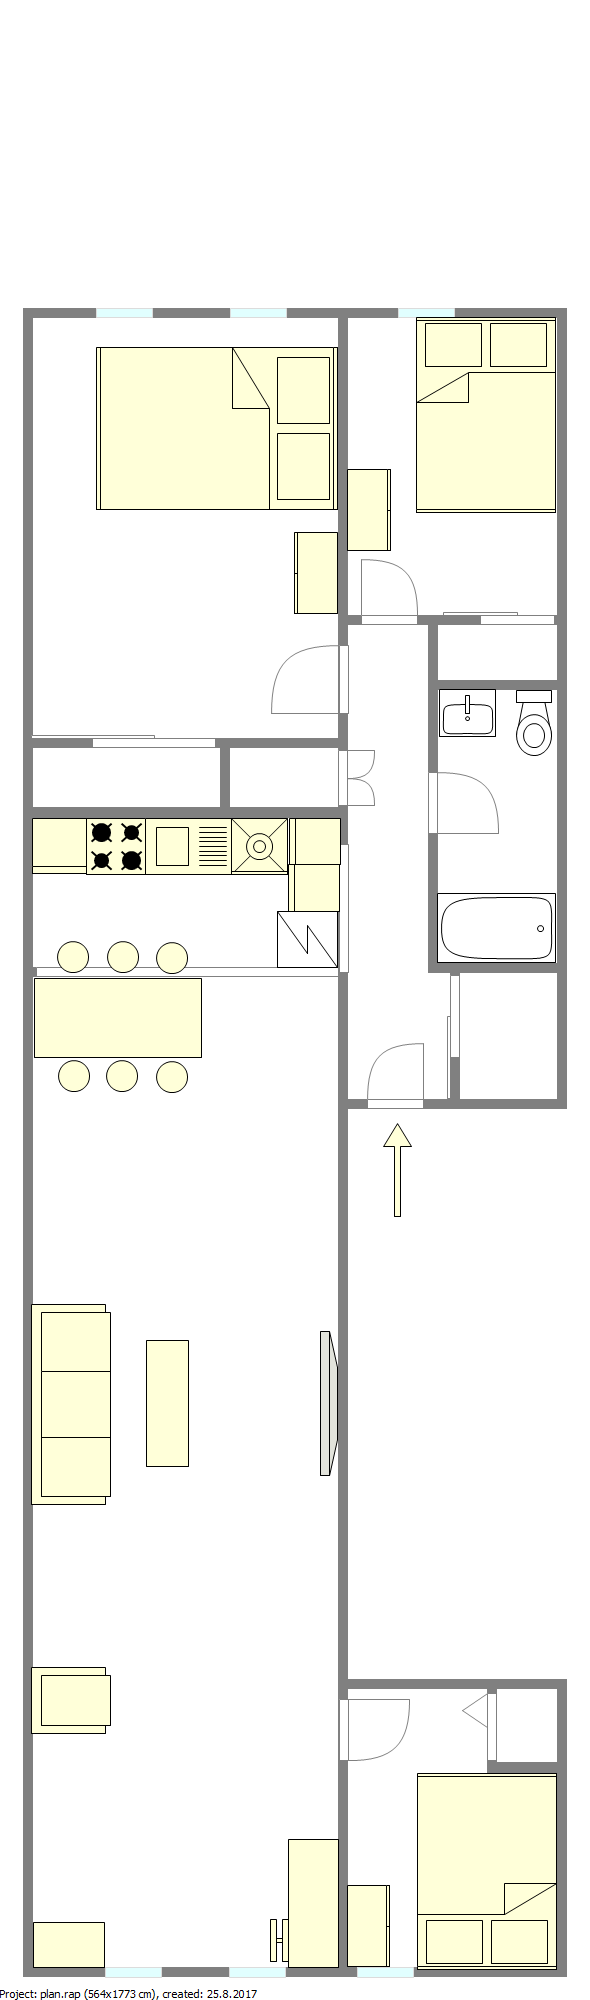 Квартира Astoria - Интерактивный план